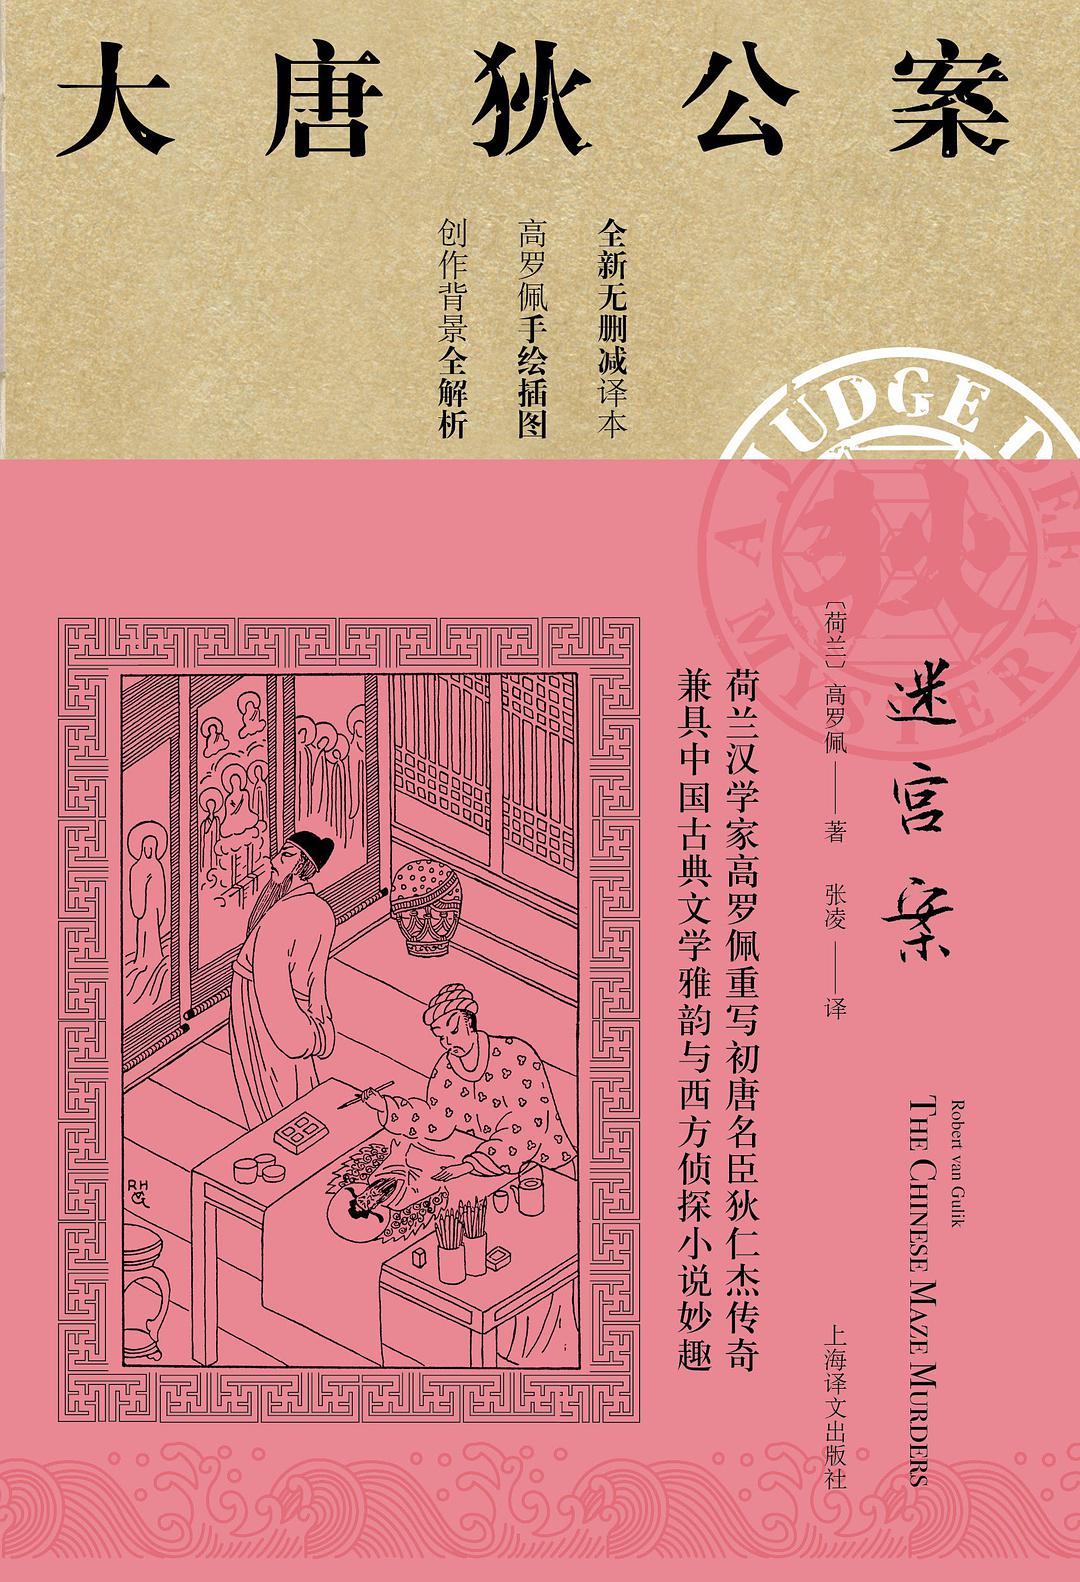 迷宫案 (Chinese language, 2019, 上海译文出版社)